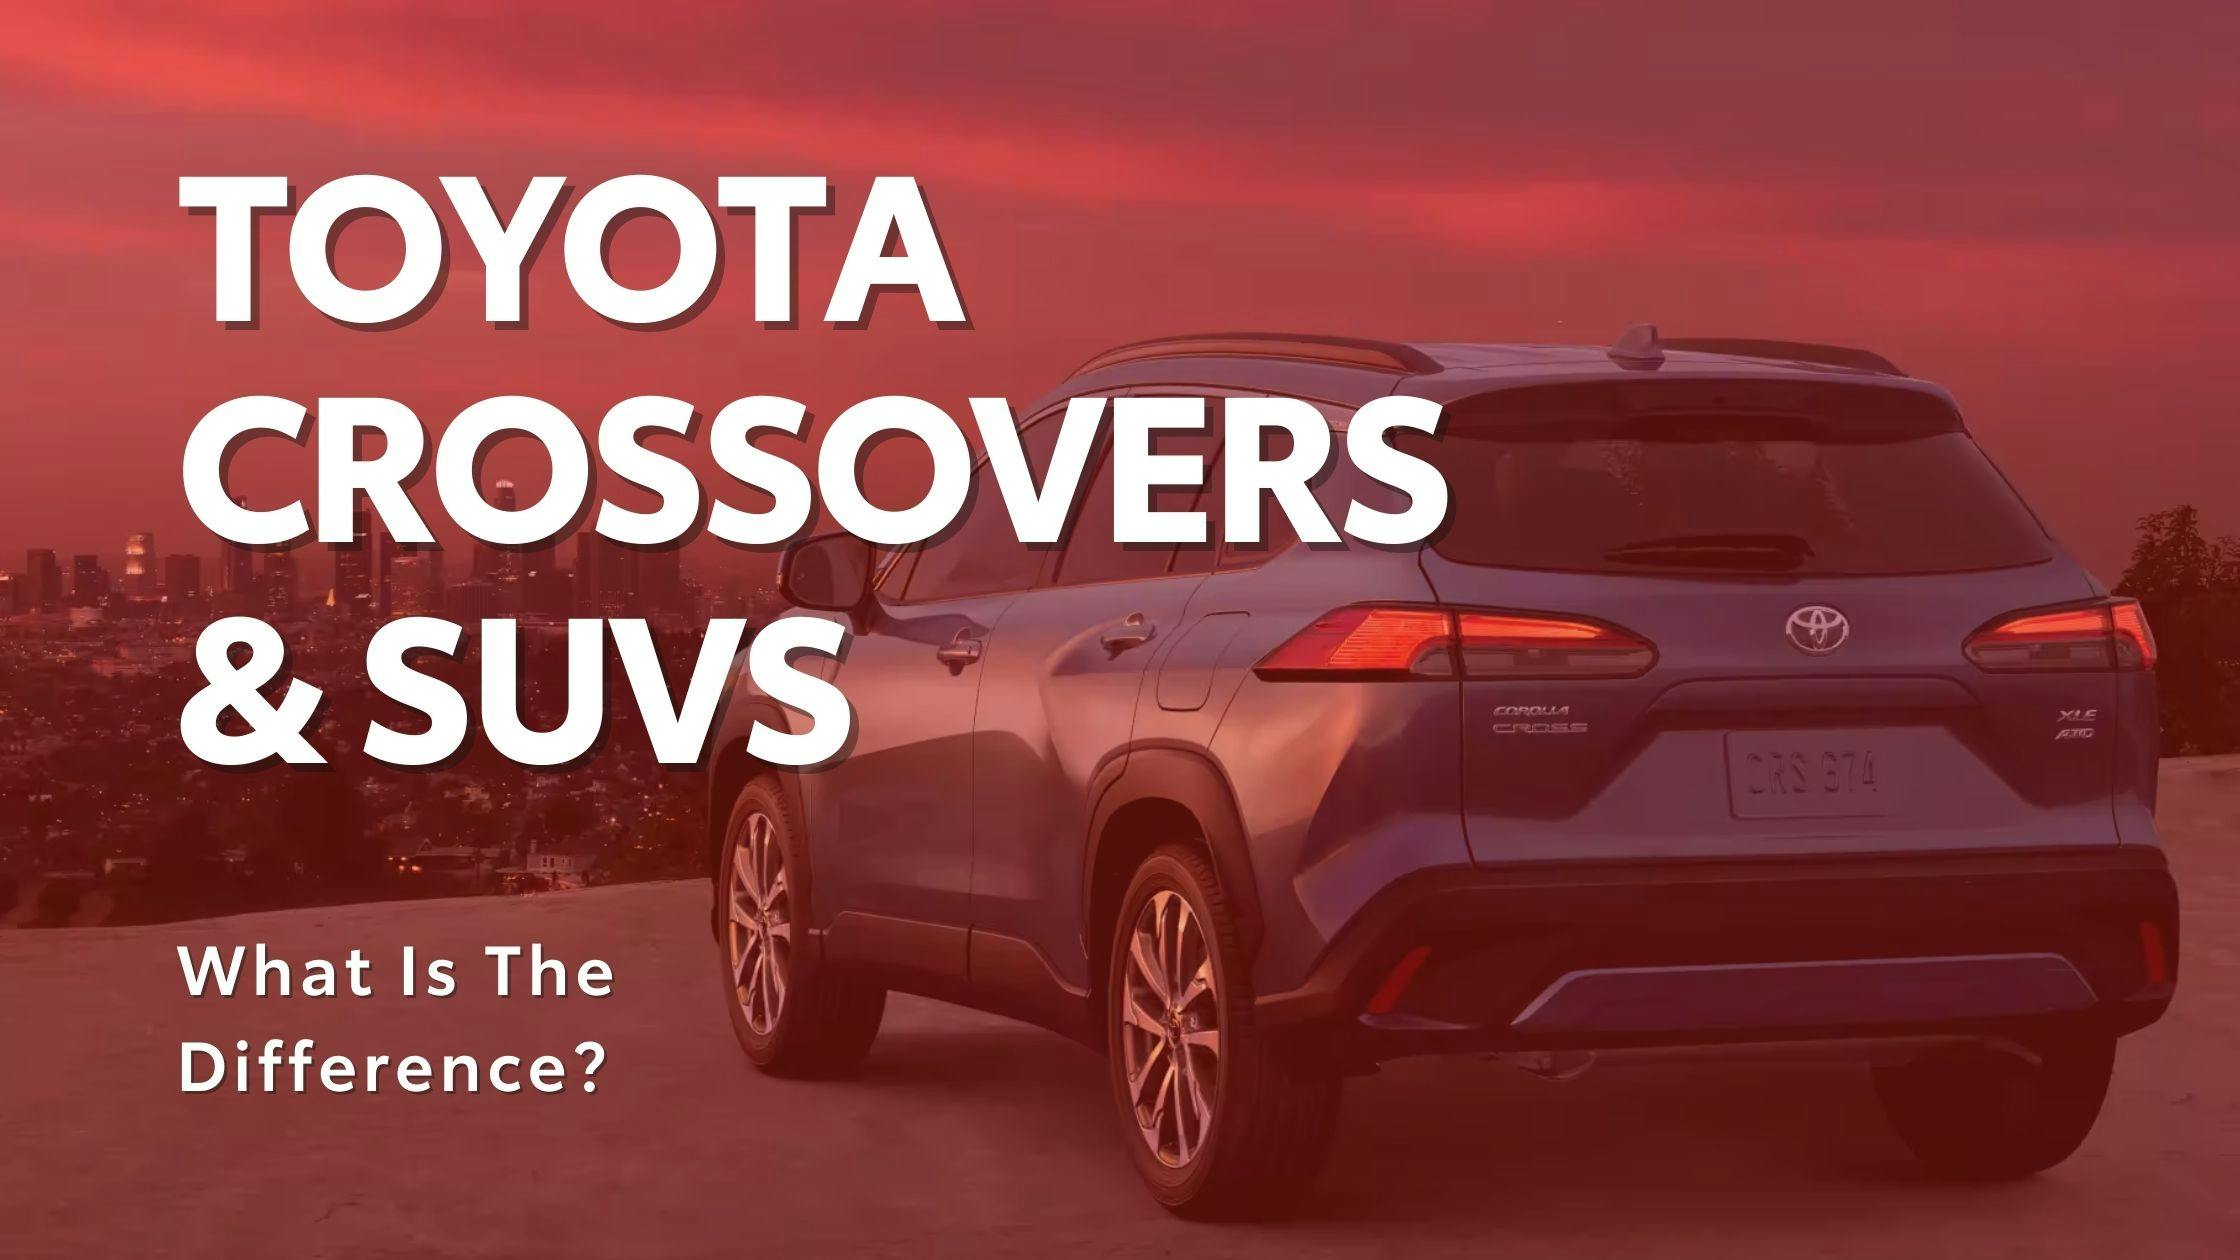 Toyota Crossovers & SUvs